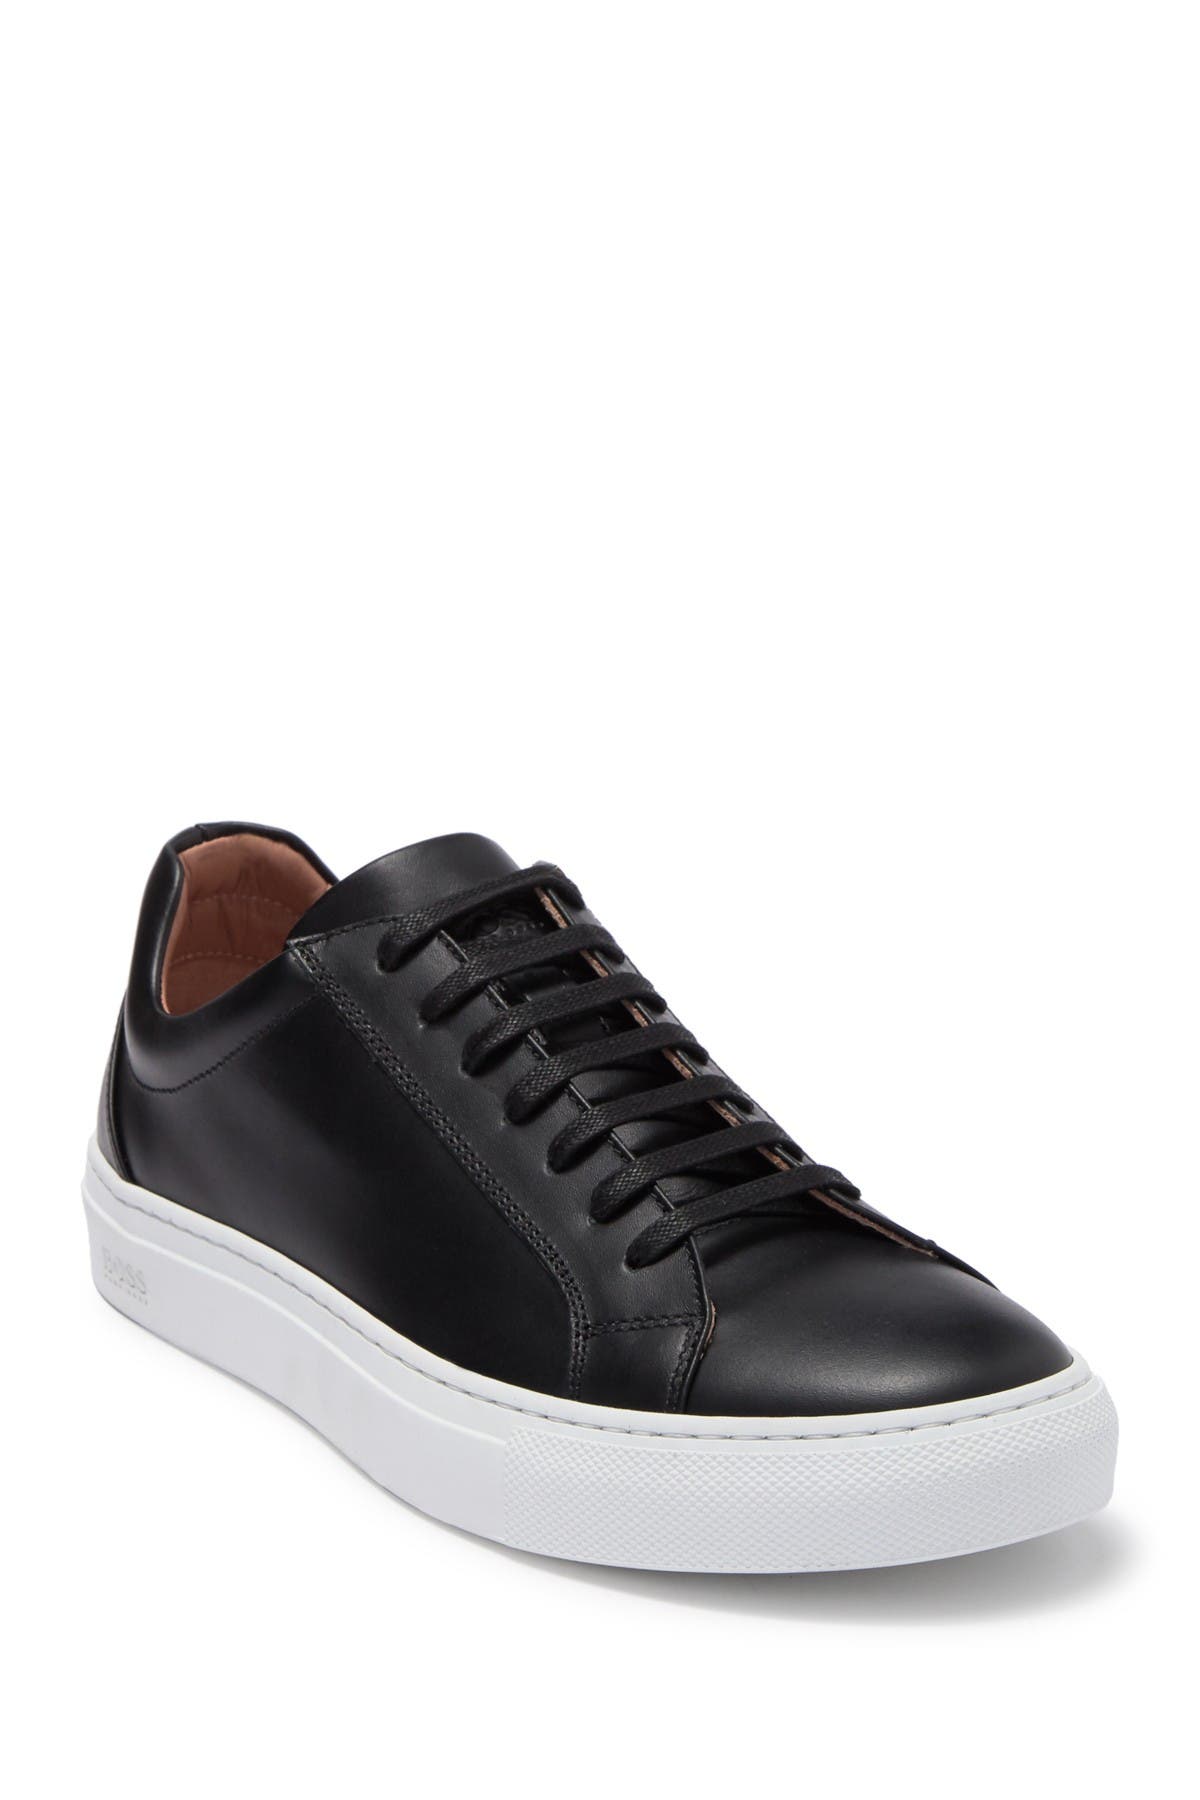 BOSS | Low Cut Leather Sneaker 